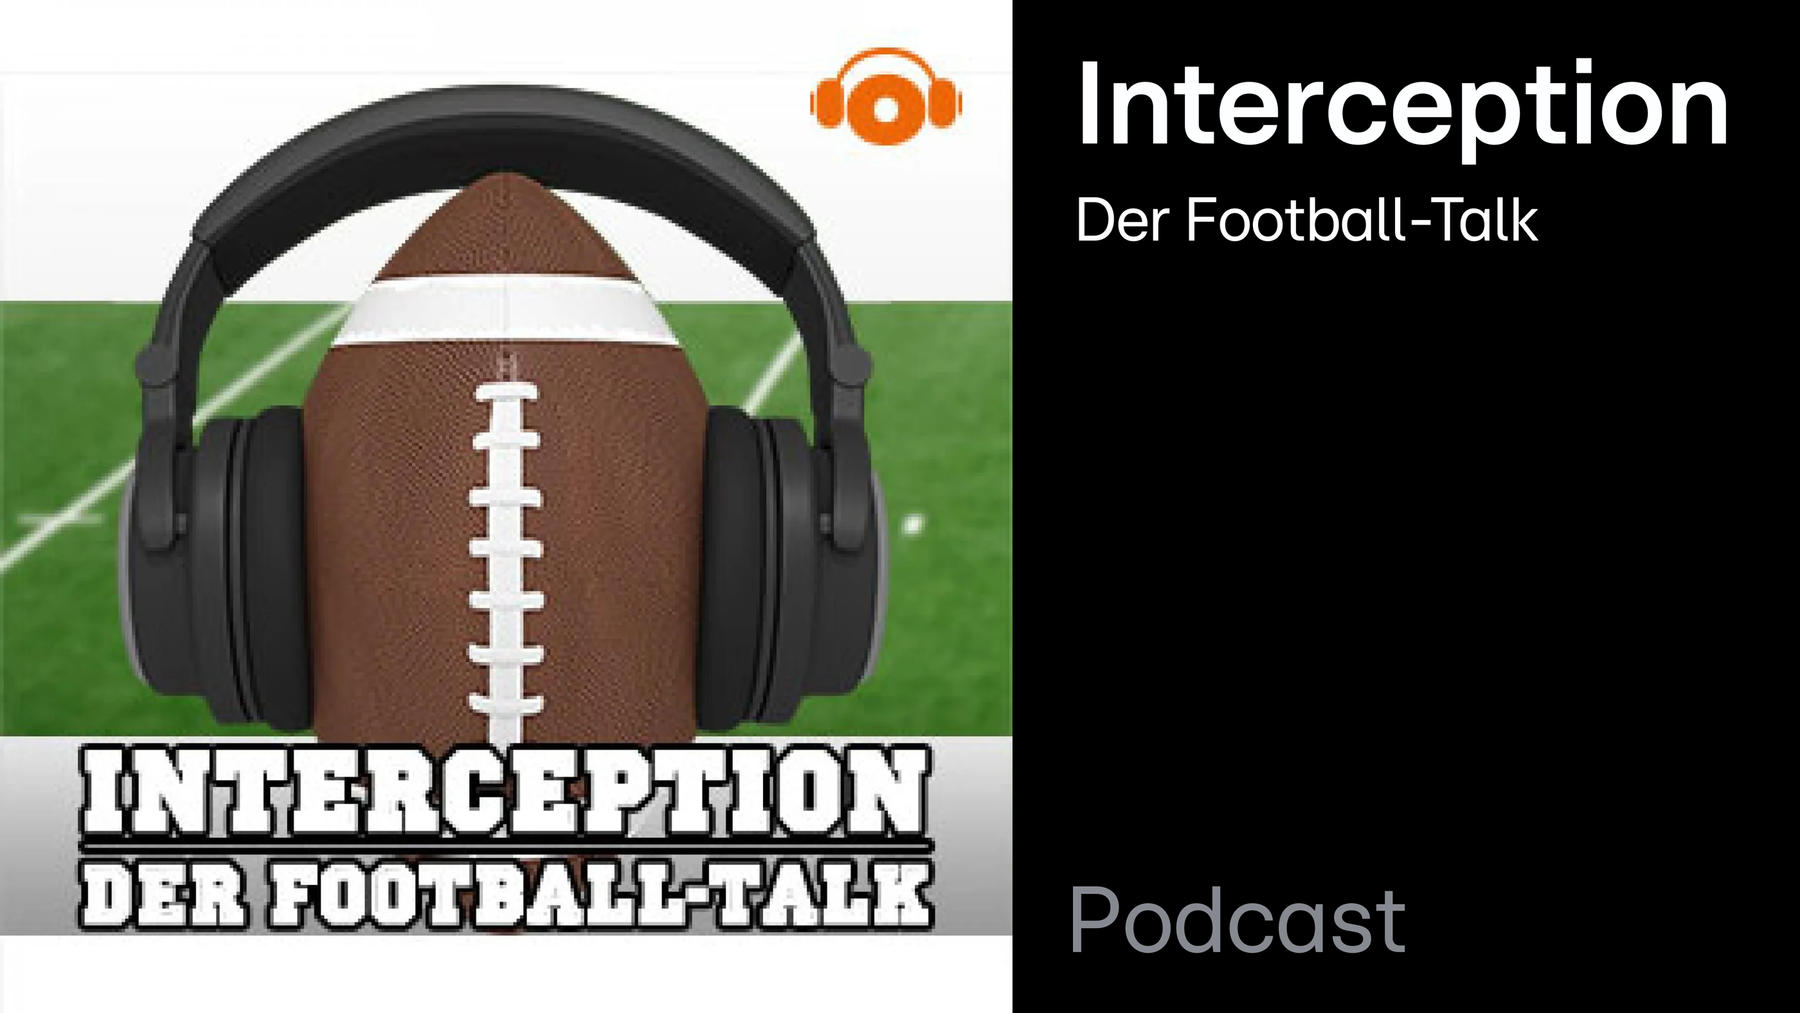 Podcast: Interception - Der Football-Talk